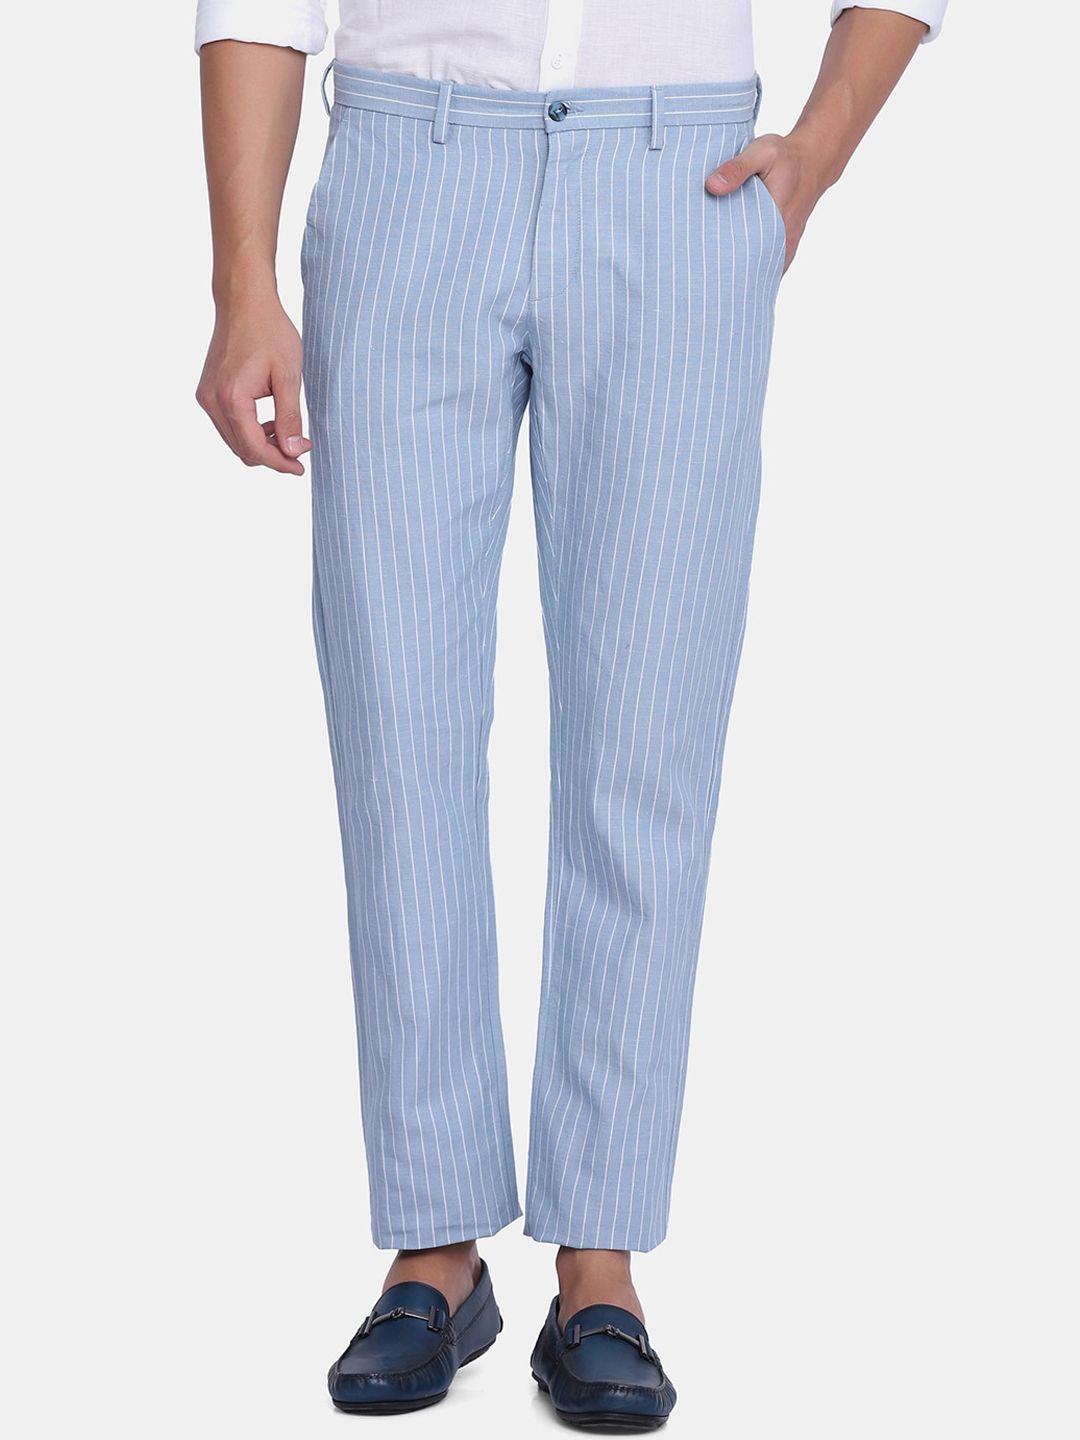 blackberrys-men-blue-striped-slim-fit-trousers